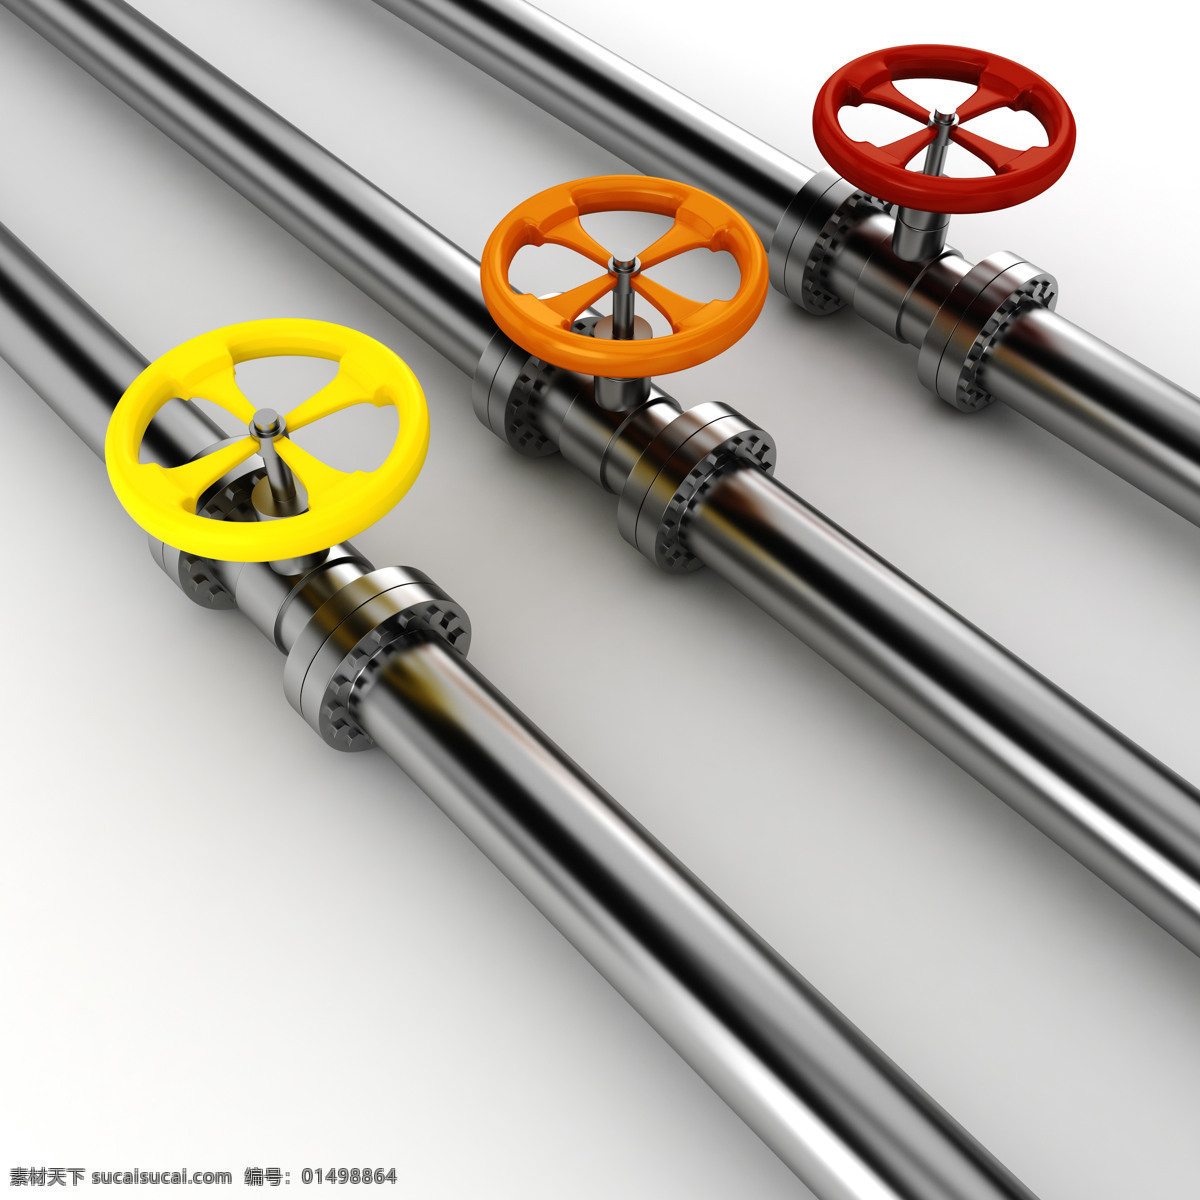 广告 背景 素材图片 天然气 天然气素材 管道 管道摄影 钢铁管道 管道素材 生活百科 工业生产 现代科技